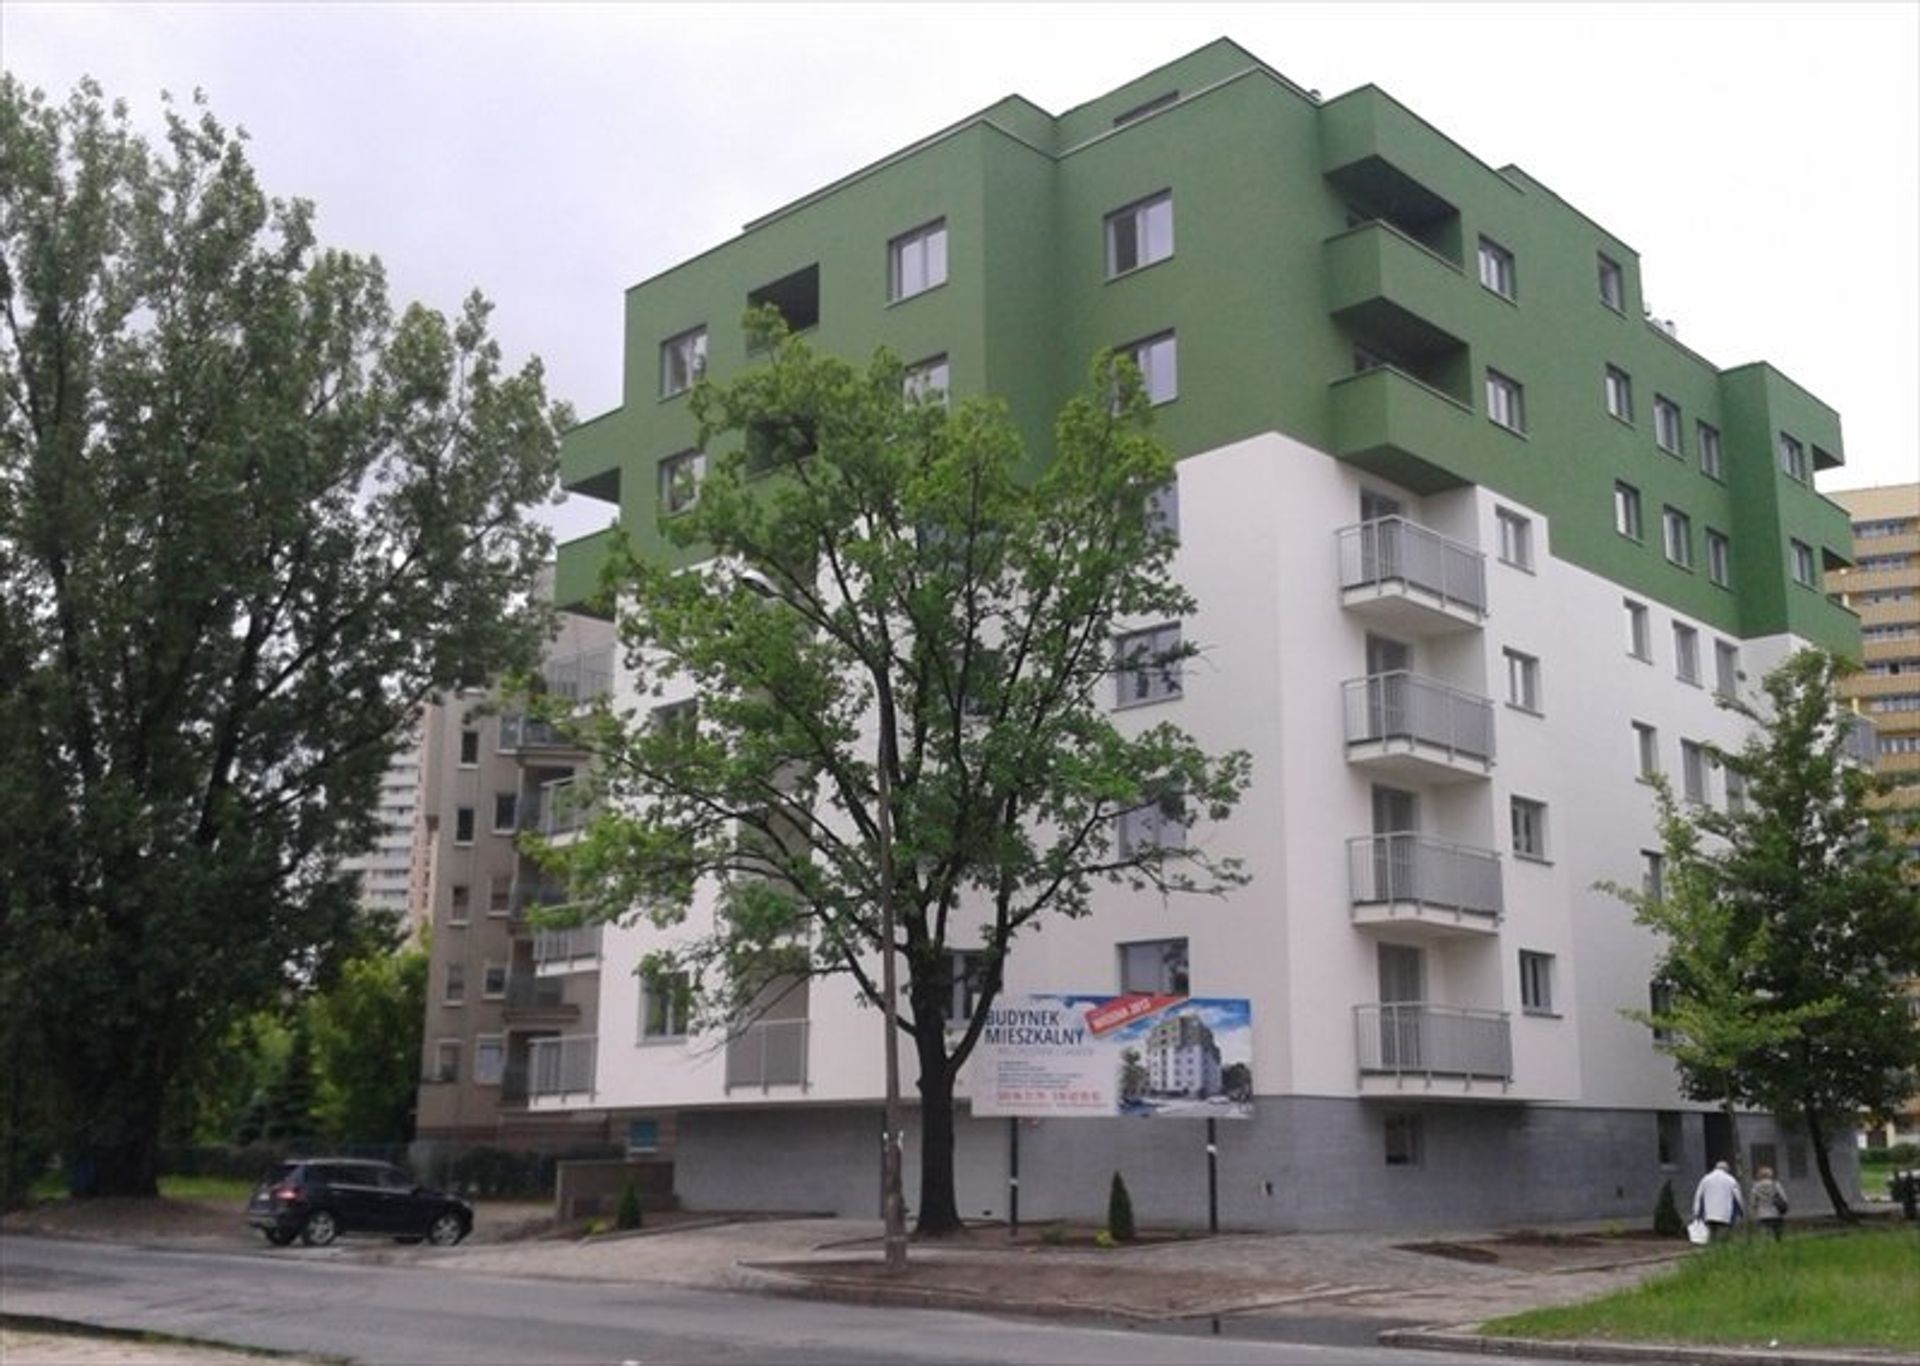  Duże mieszkania w Warszawie nadal popularne